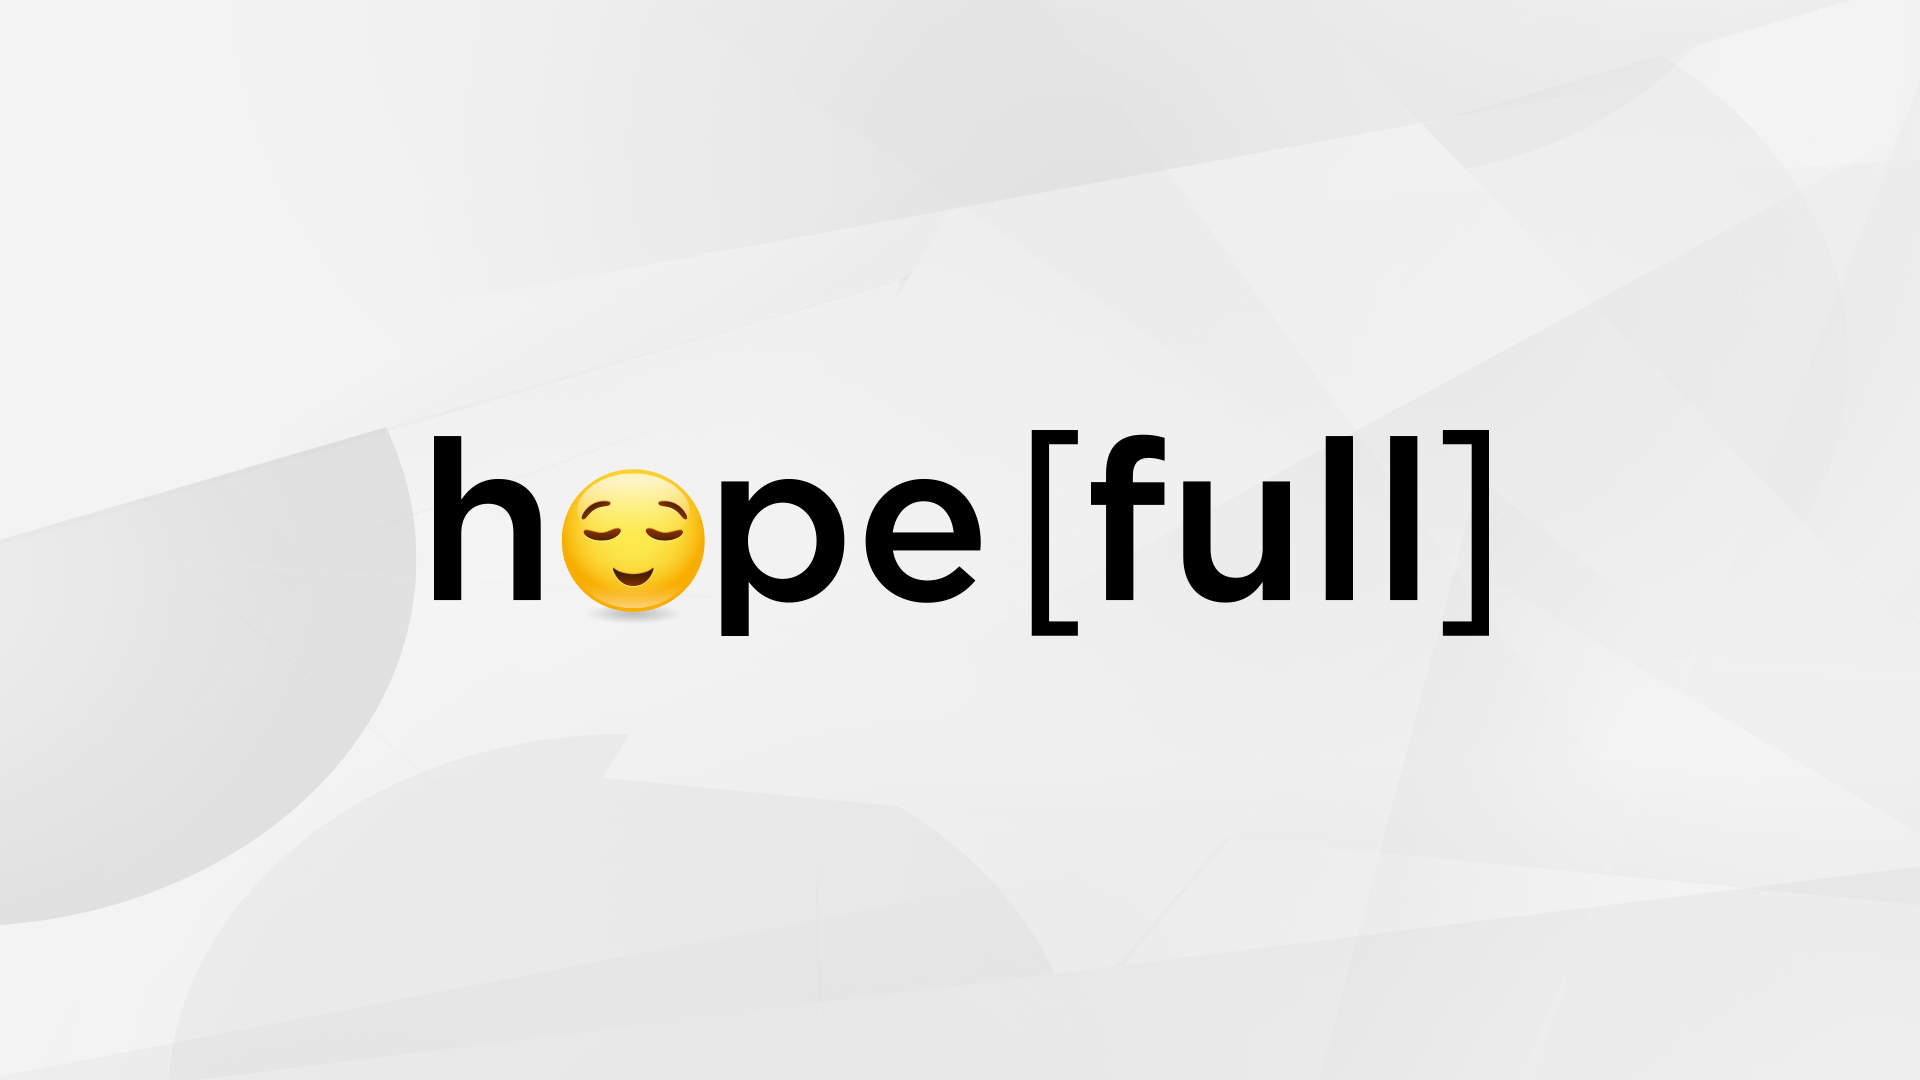      Hope[full]